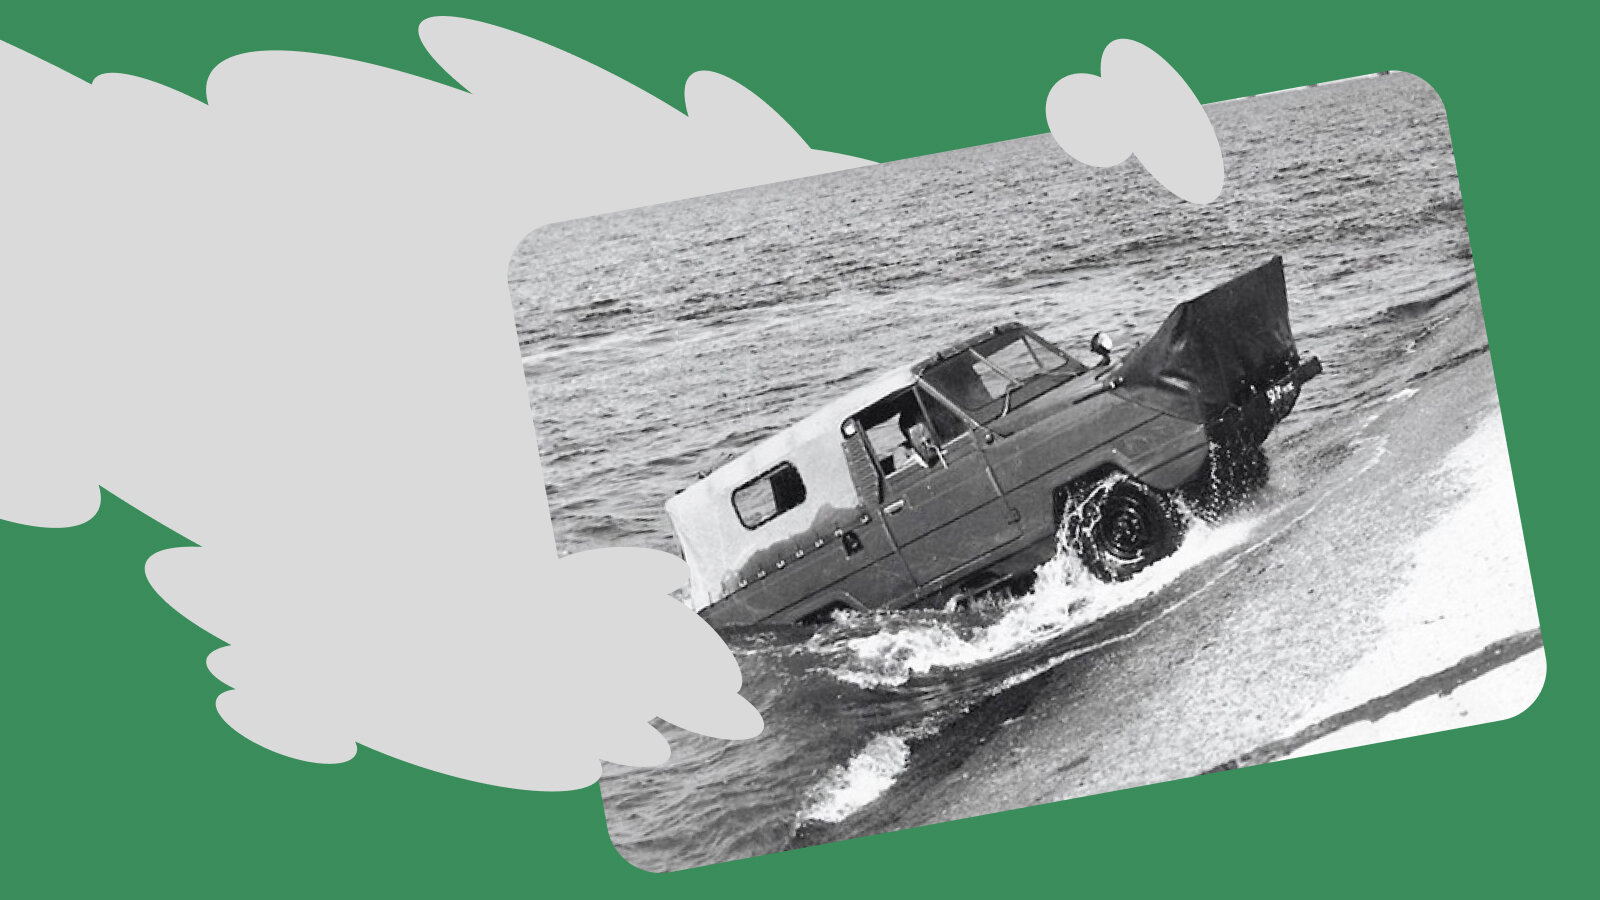 Амфибия УАЗ «Ягуар»: интересные особенности самой удачной советской плавающей машины